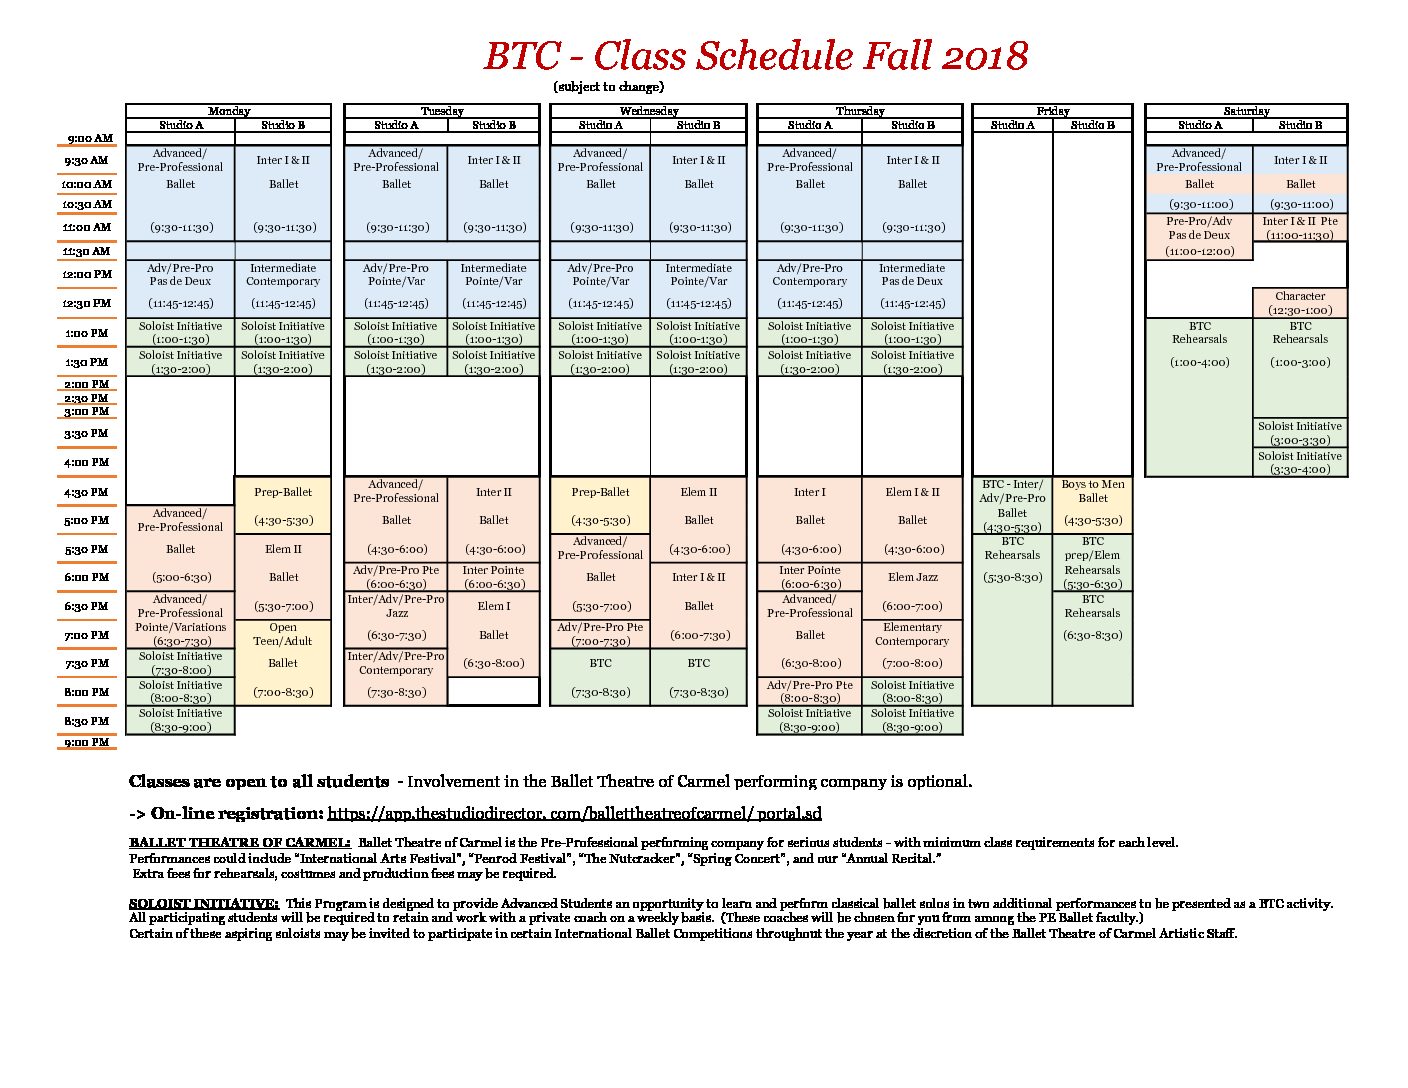 btc class schedule